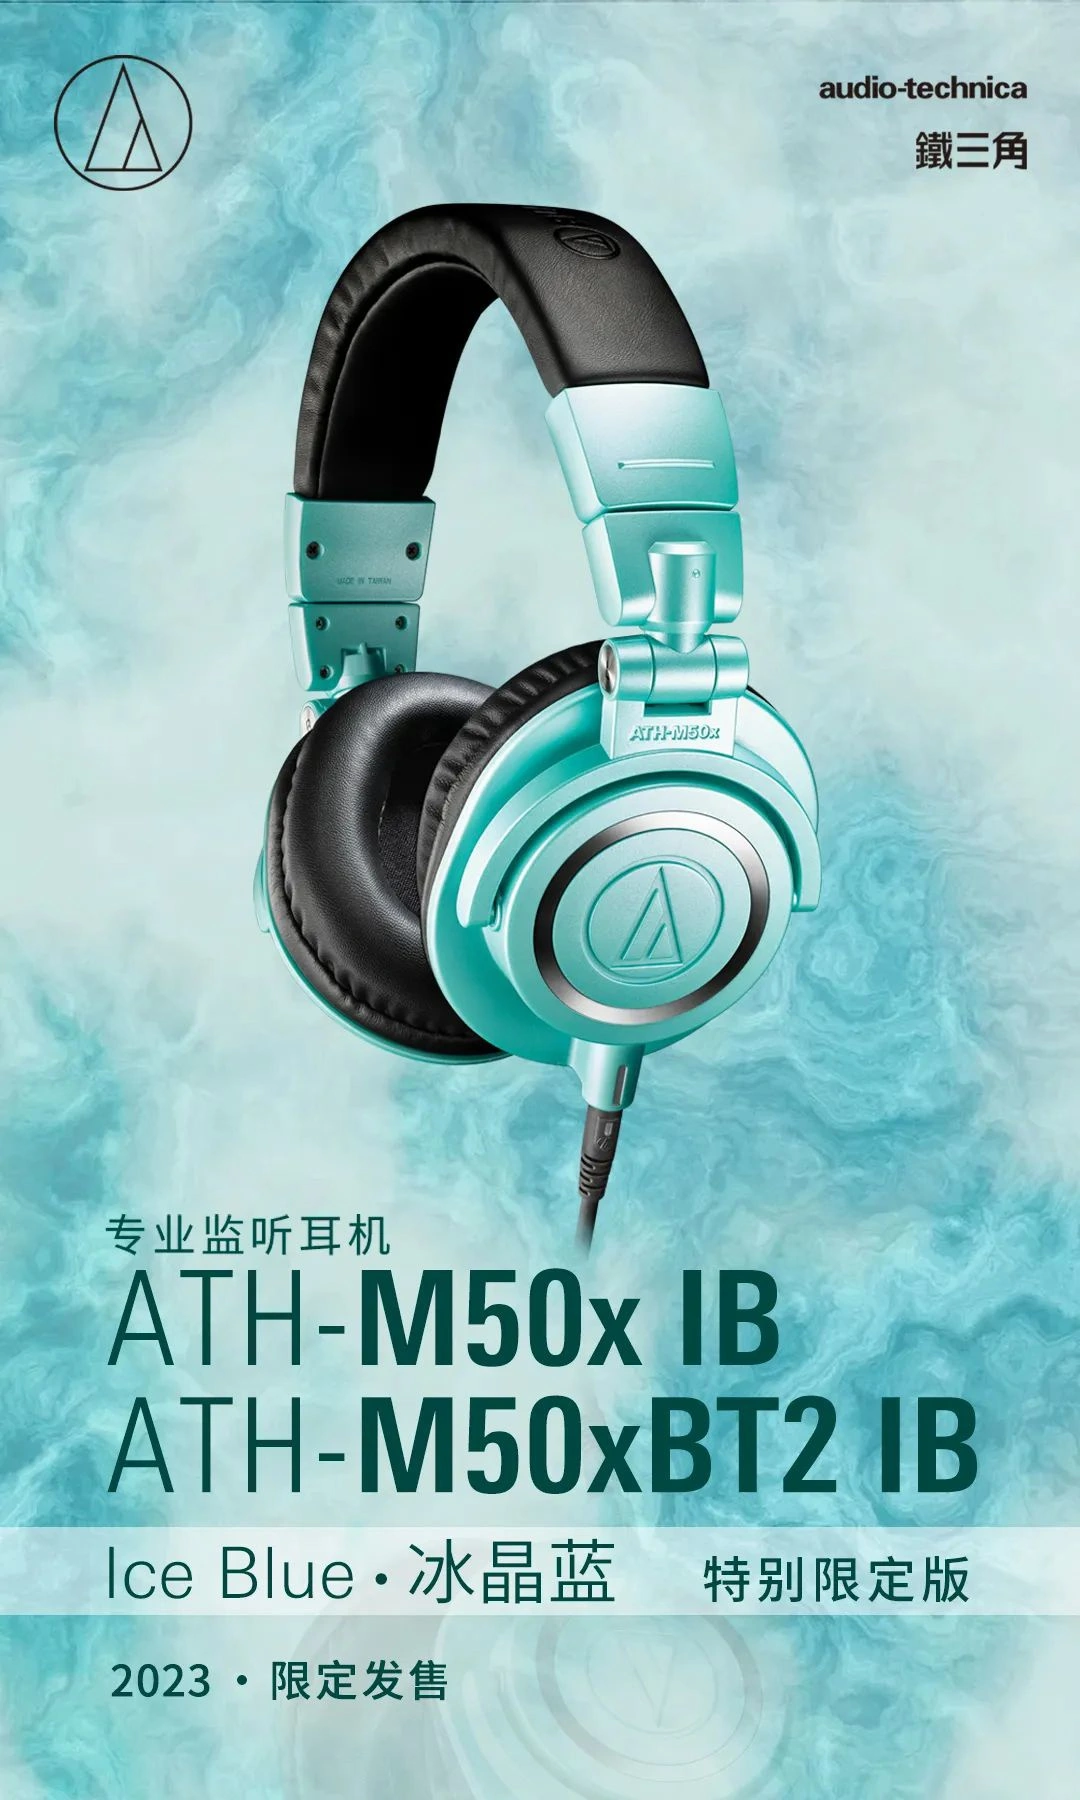 2023 年度限定铁三角 ATH-M50x IB 冰晶蓝耳机发售